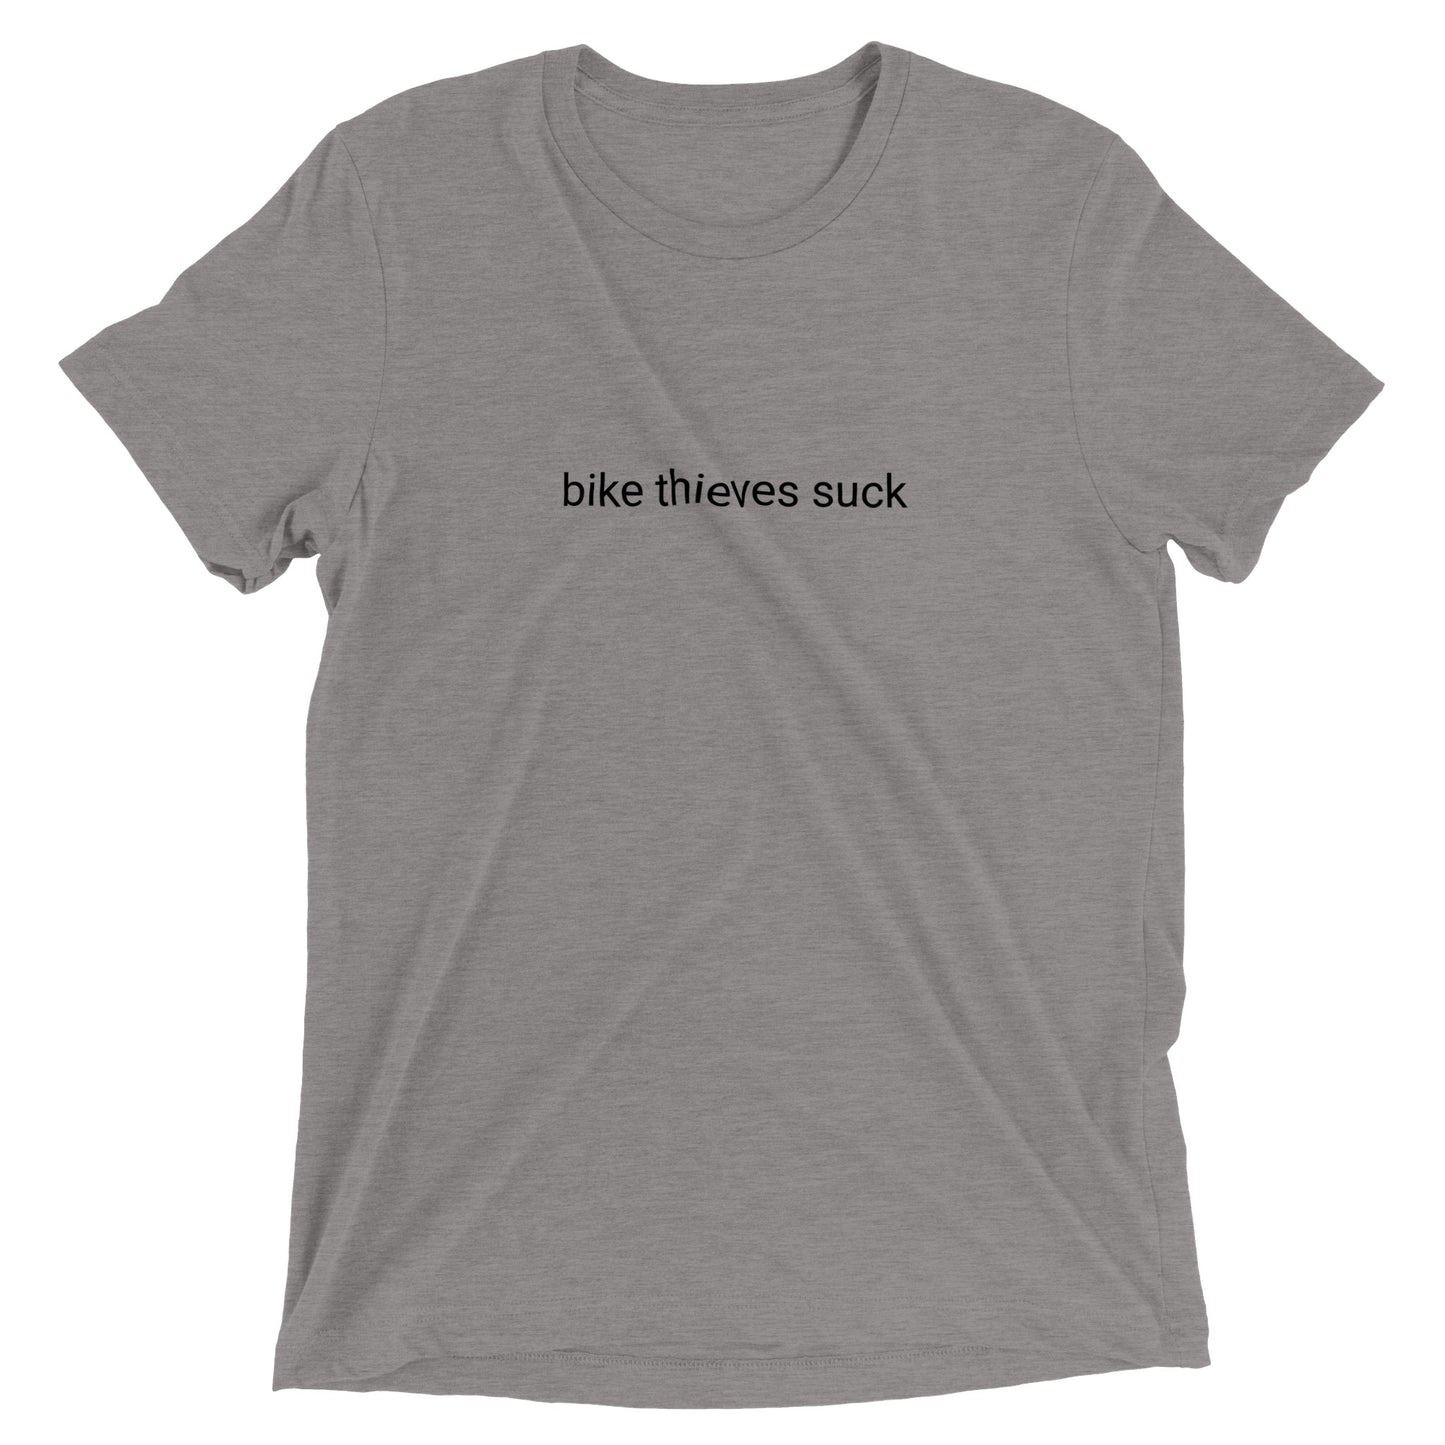 "Bike thieves suck" - Camiseta de cuello redondo unisex Triblend